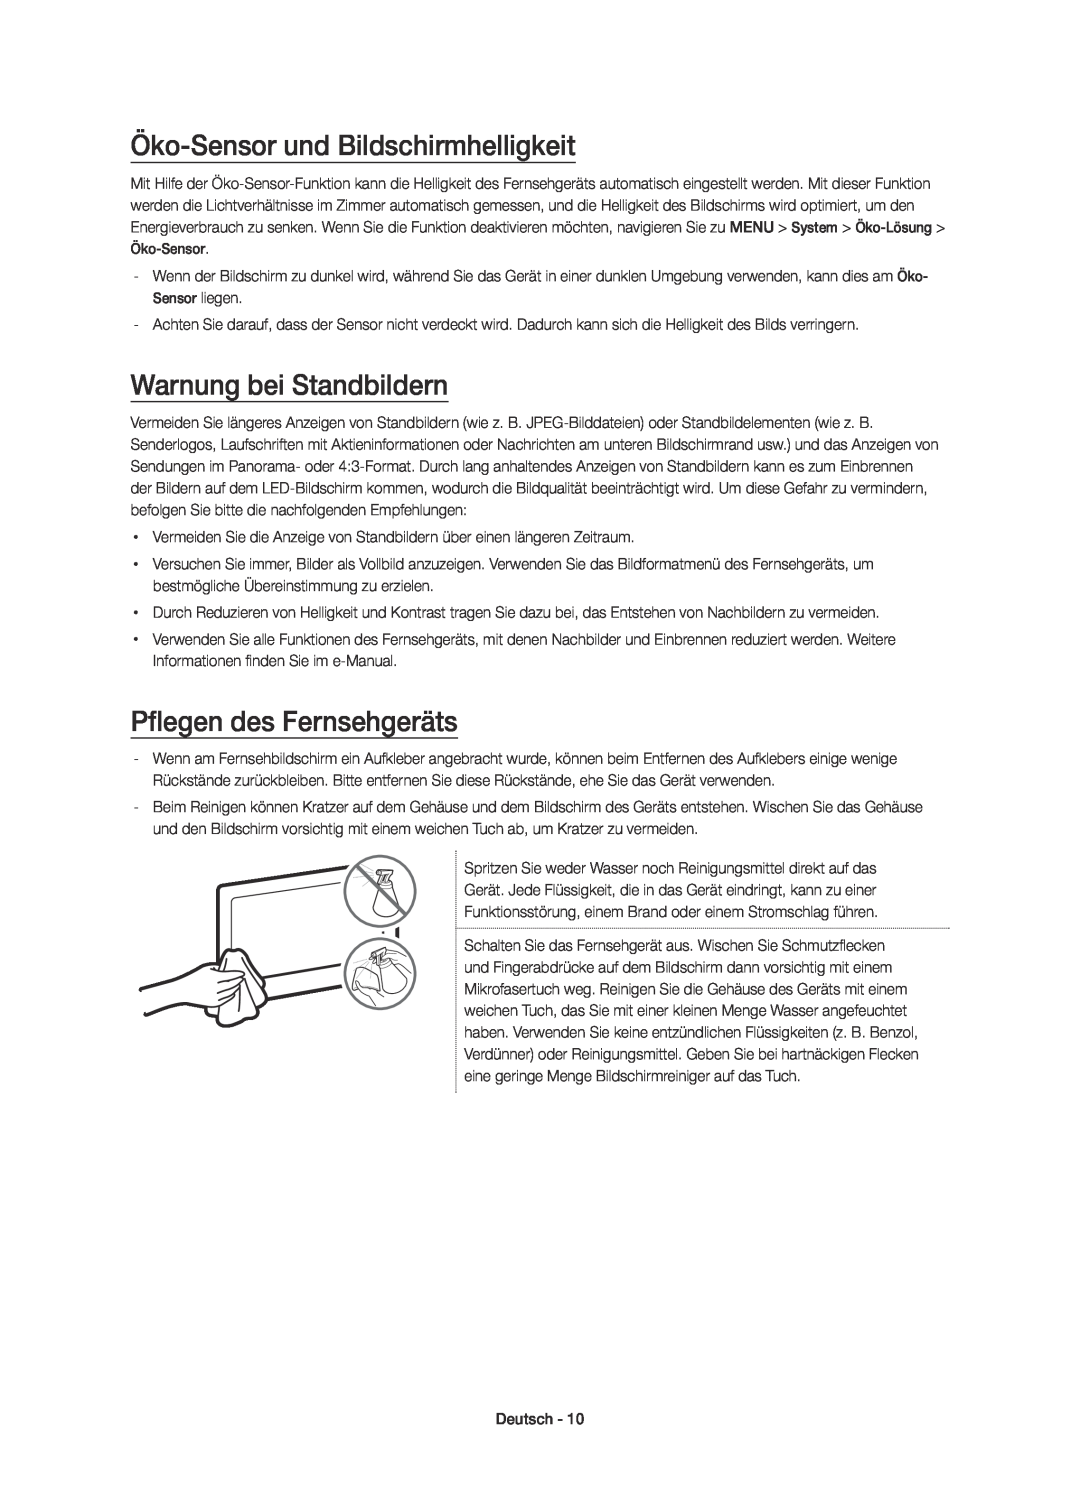 Samsung UE65JU7500TXZT manual Öko-Sensor und Bildschirmhelligkeit, Warnung bei Standbildern, Pflegen des Fernsehgeräts 